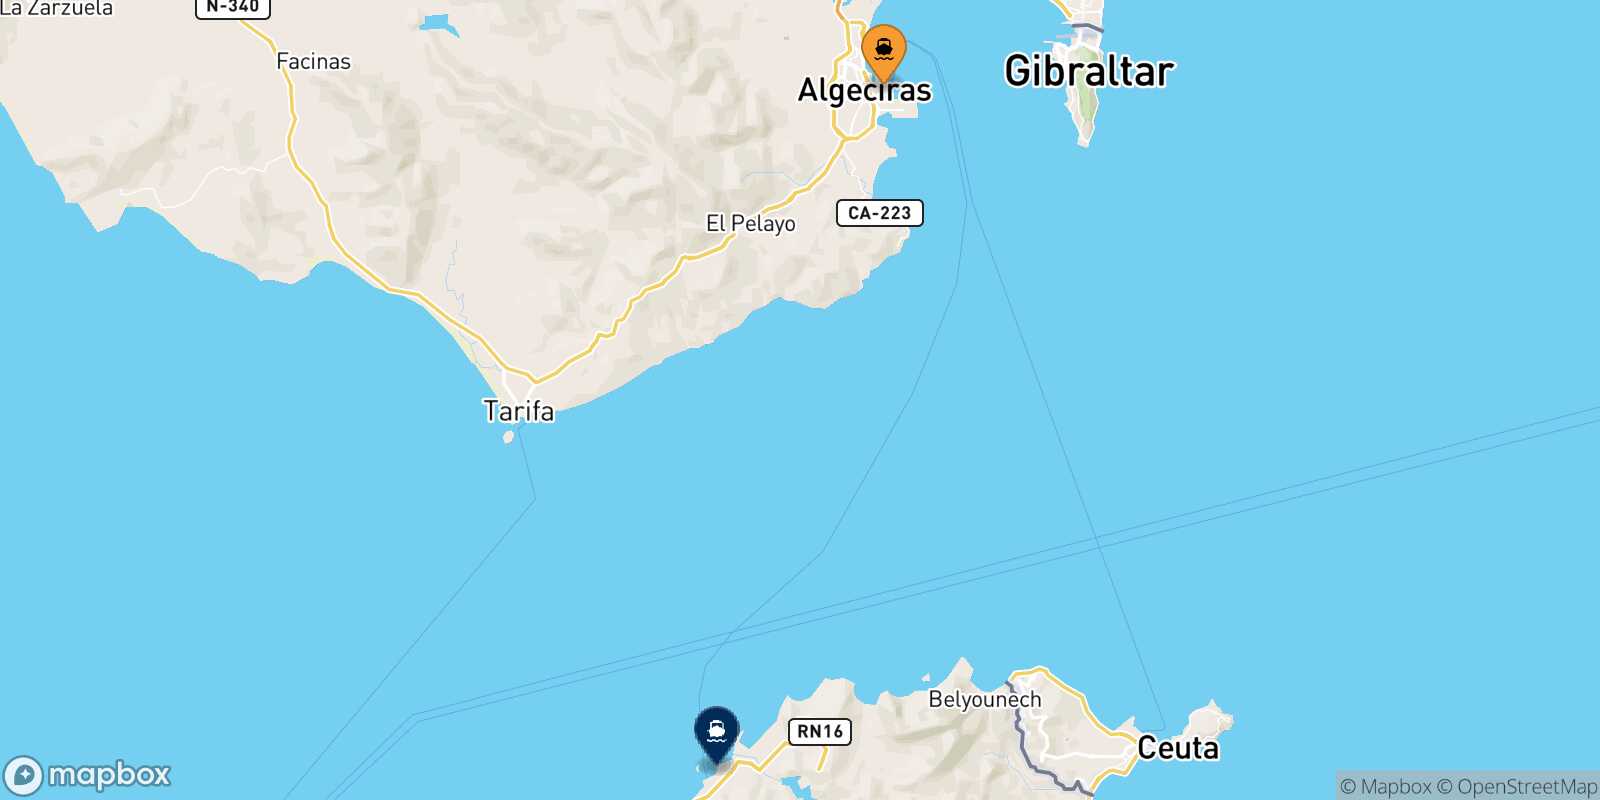 Mapa de la ruta Algeciras Tánger Med